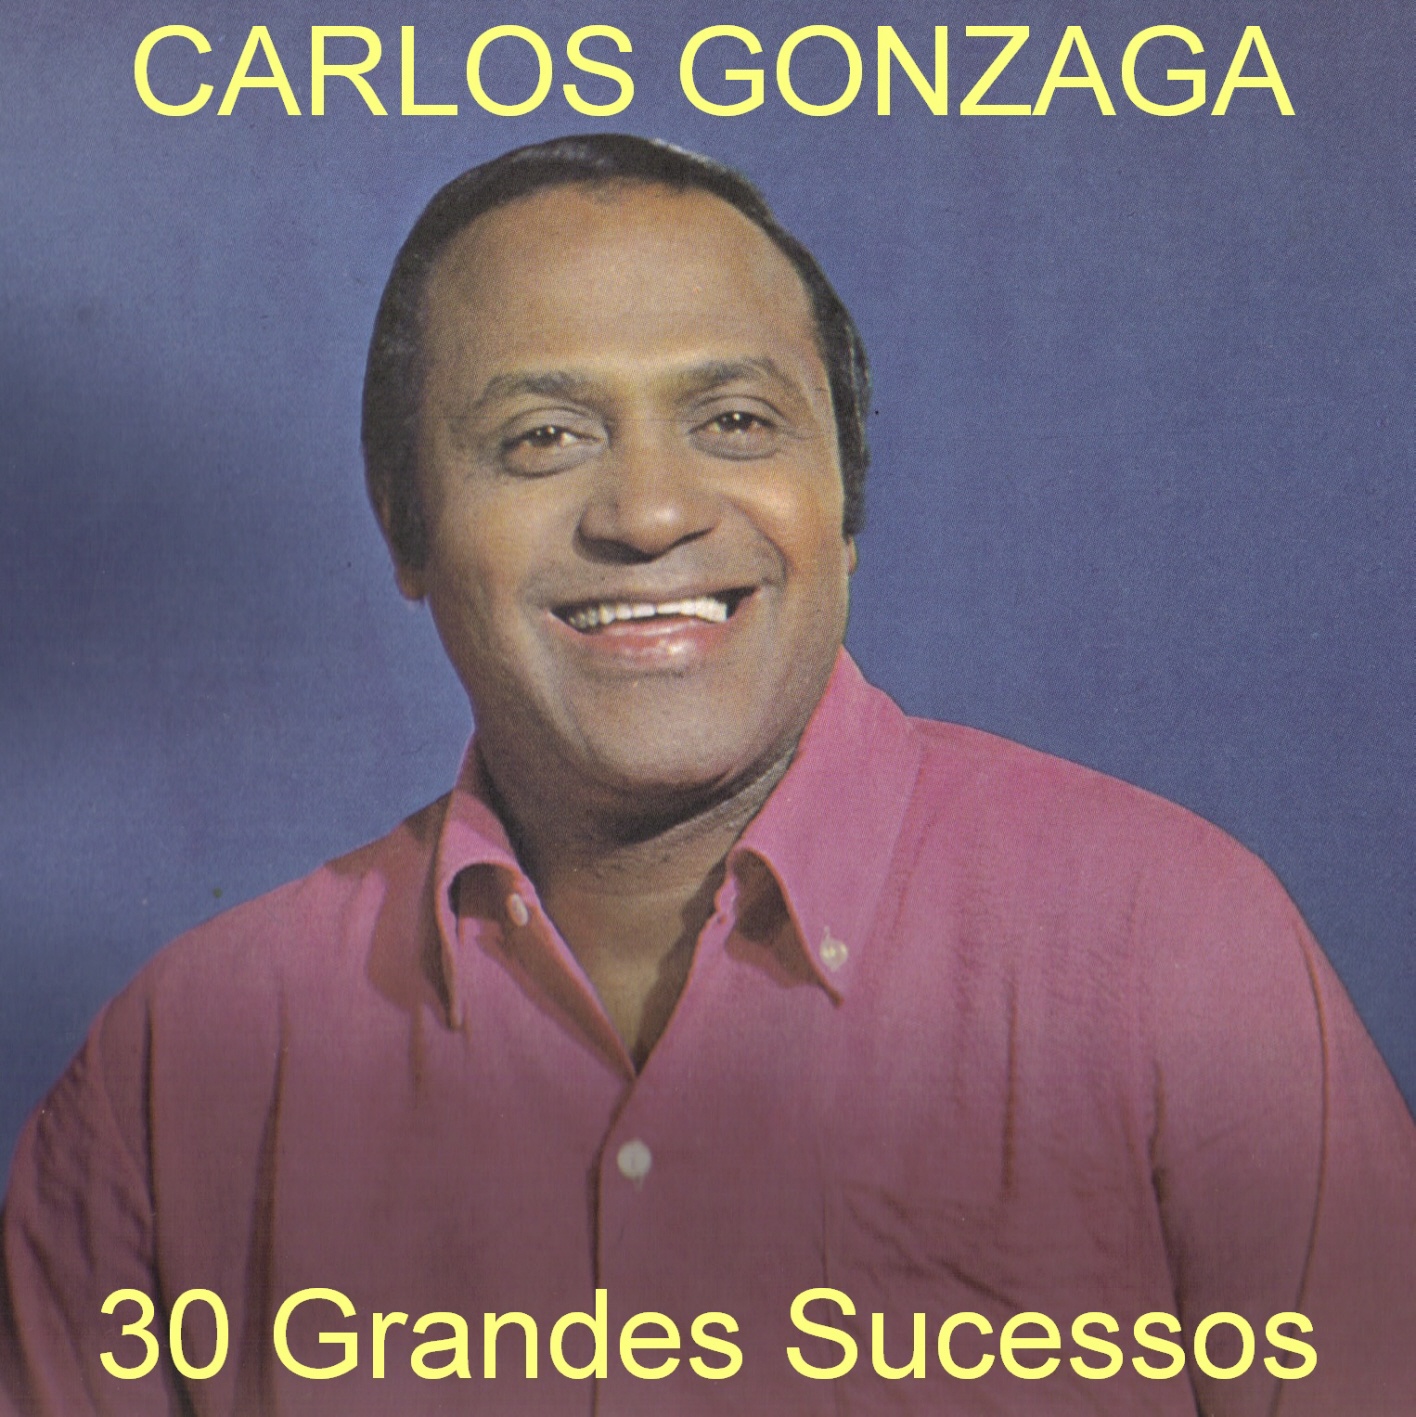 Carlos Gonzaga